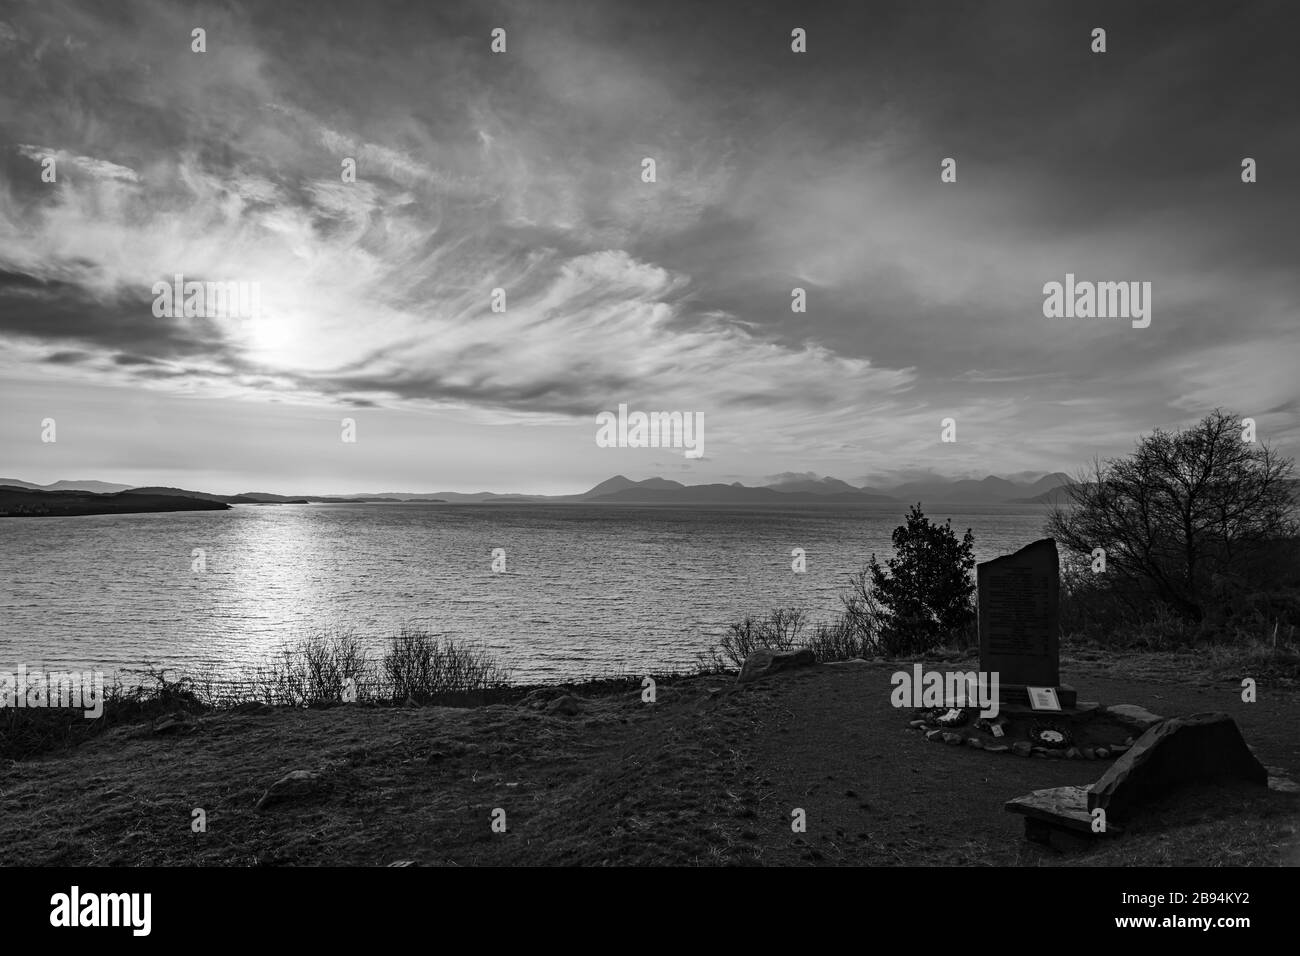 Un'immagine invernale monocromatica HDR tra parentesi, attraverso il suono interiore, fino a una lontana Isola di Skye dalla Penisola di Applecross, Scozia. 31 dicembre 2019 Foto Stock